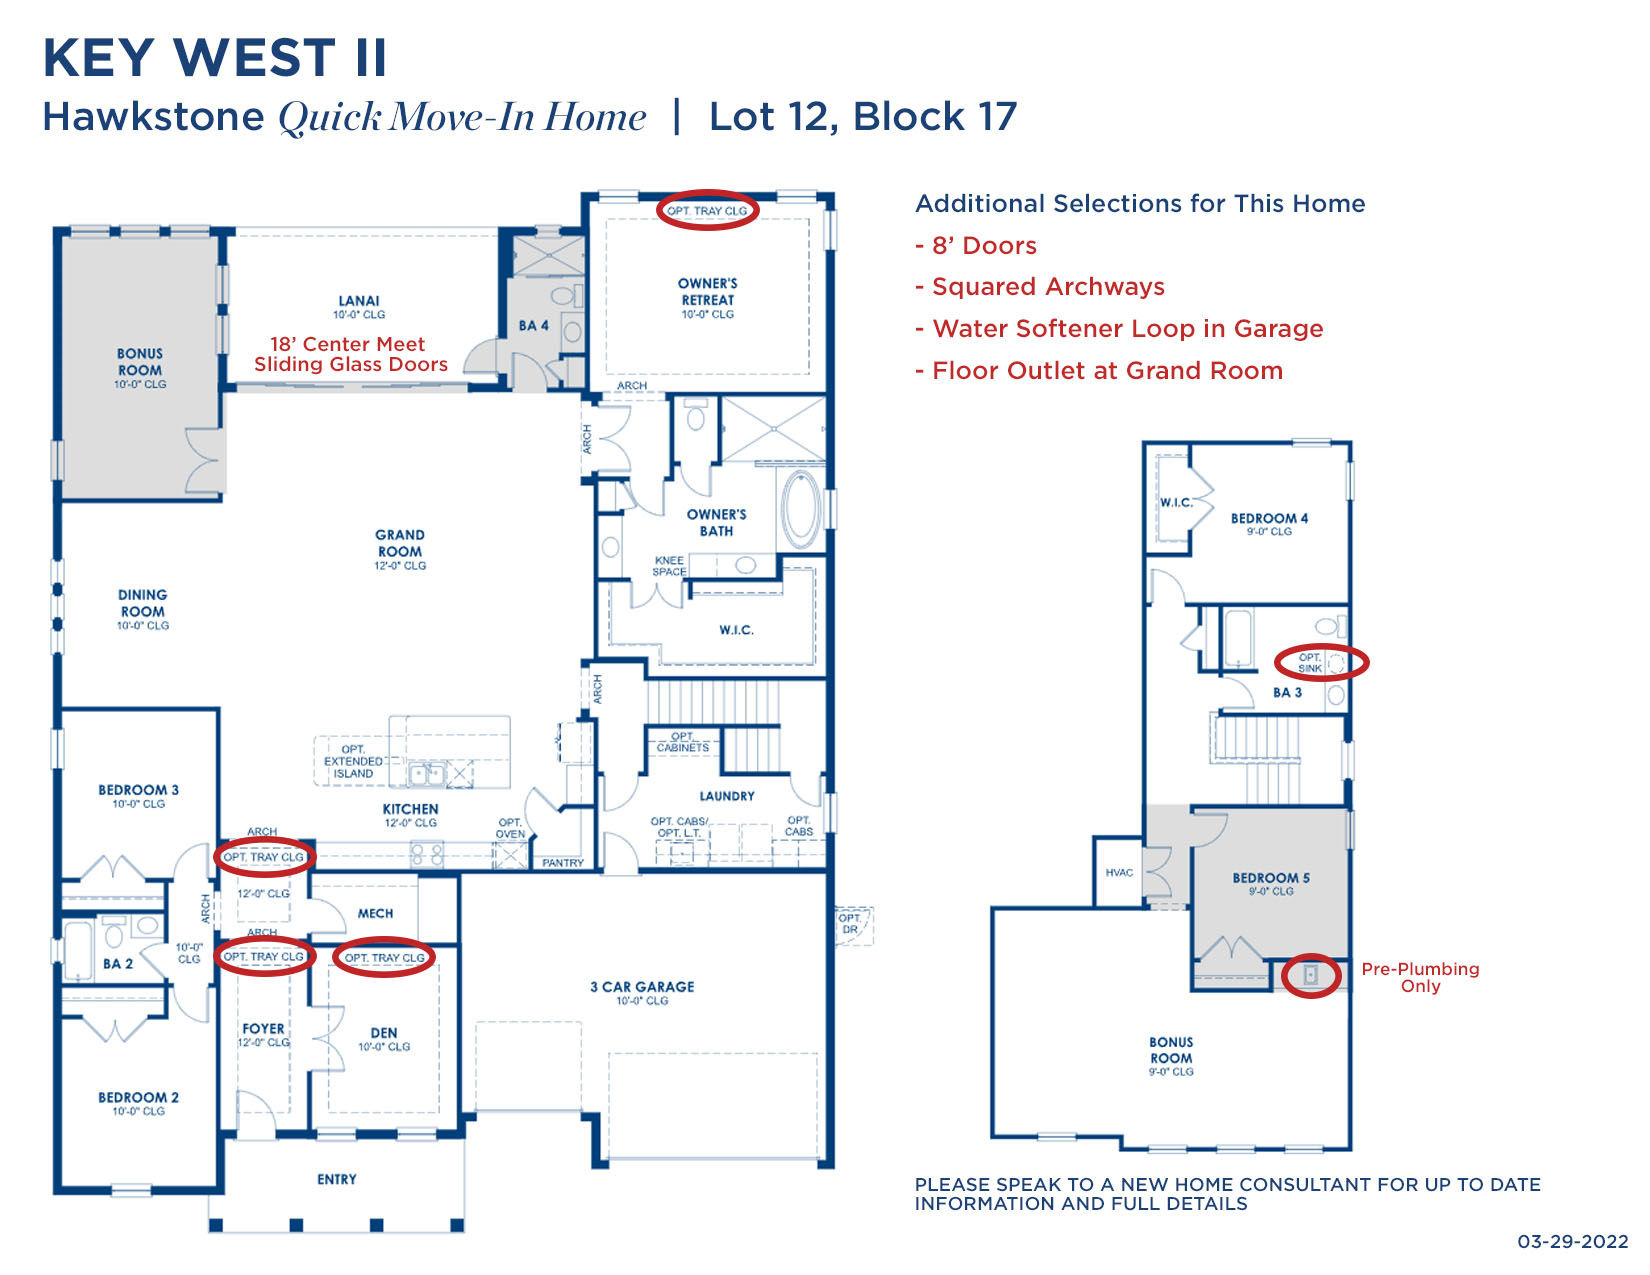 HS70 KEY WEST II 12-17 032922 Floorplan